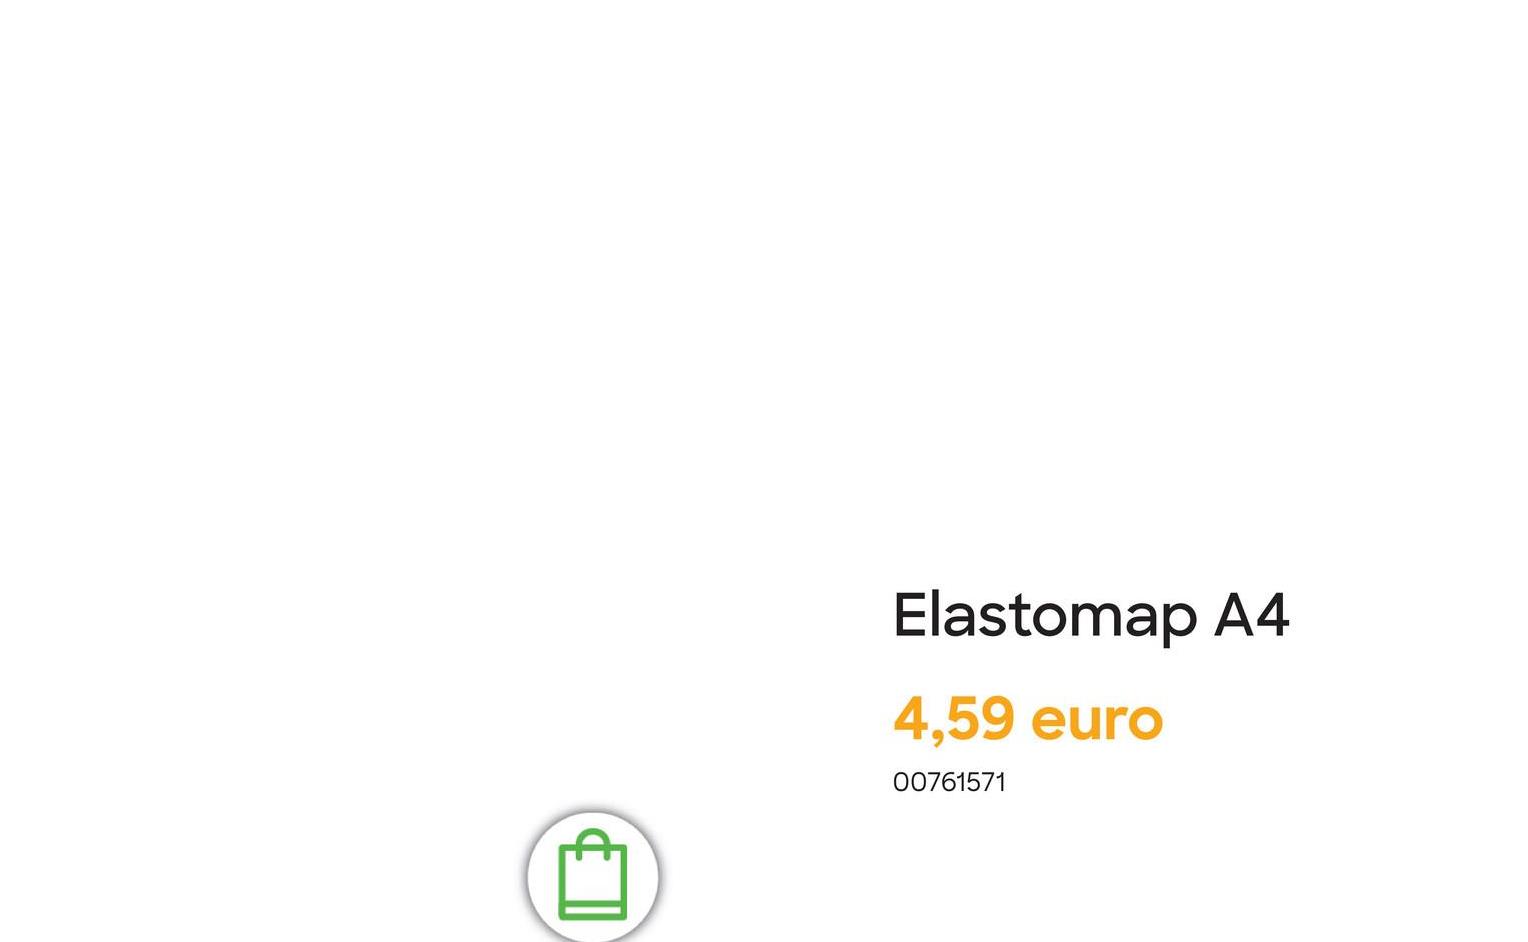 Elastomap A4
4,59 euro
00761571